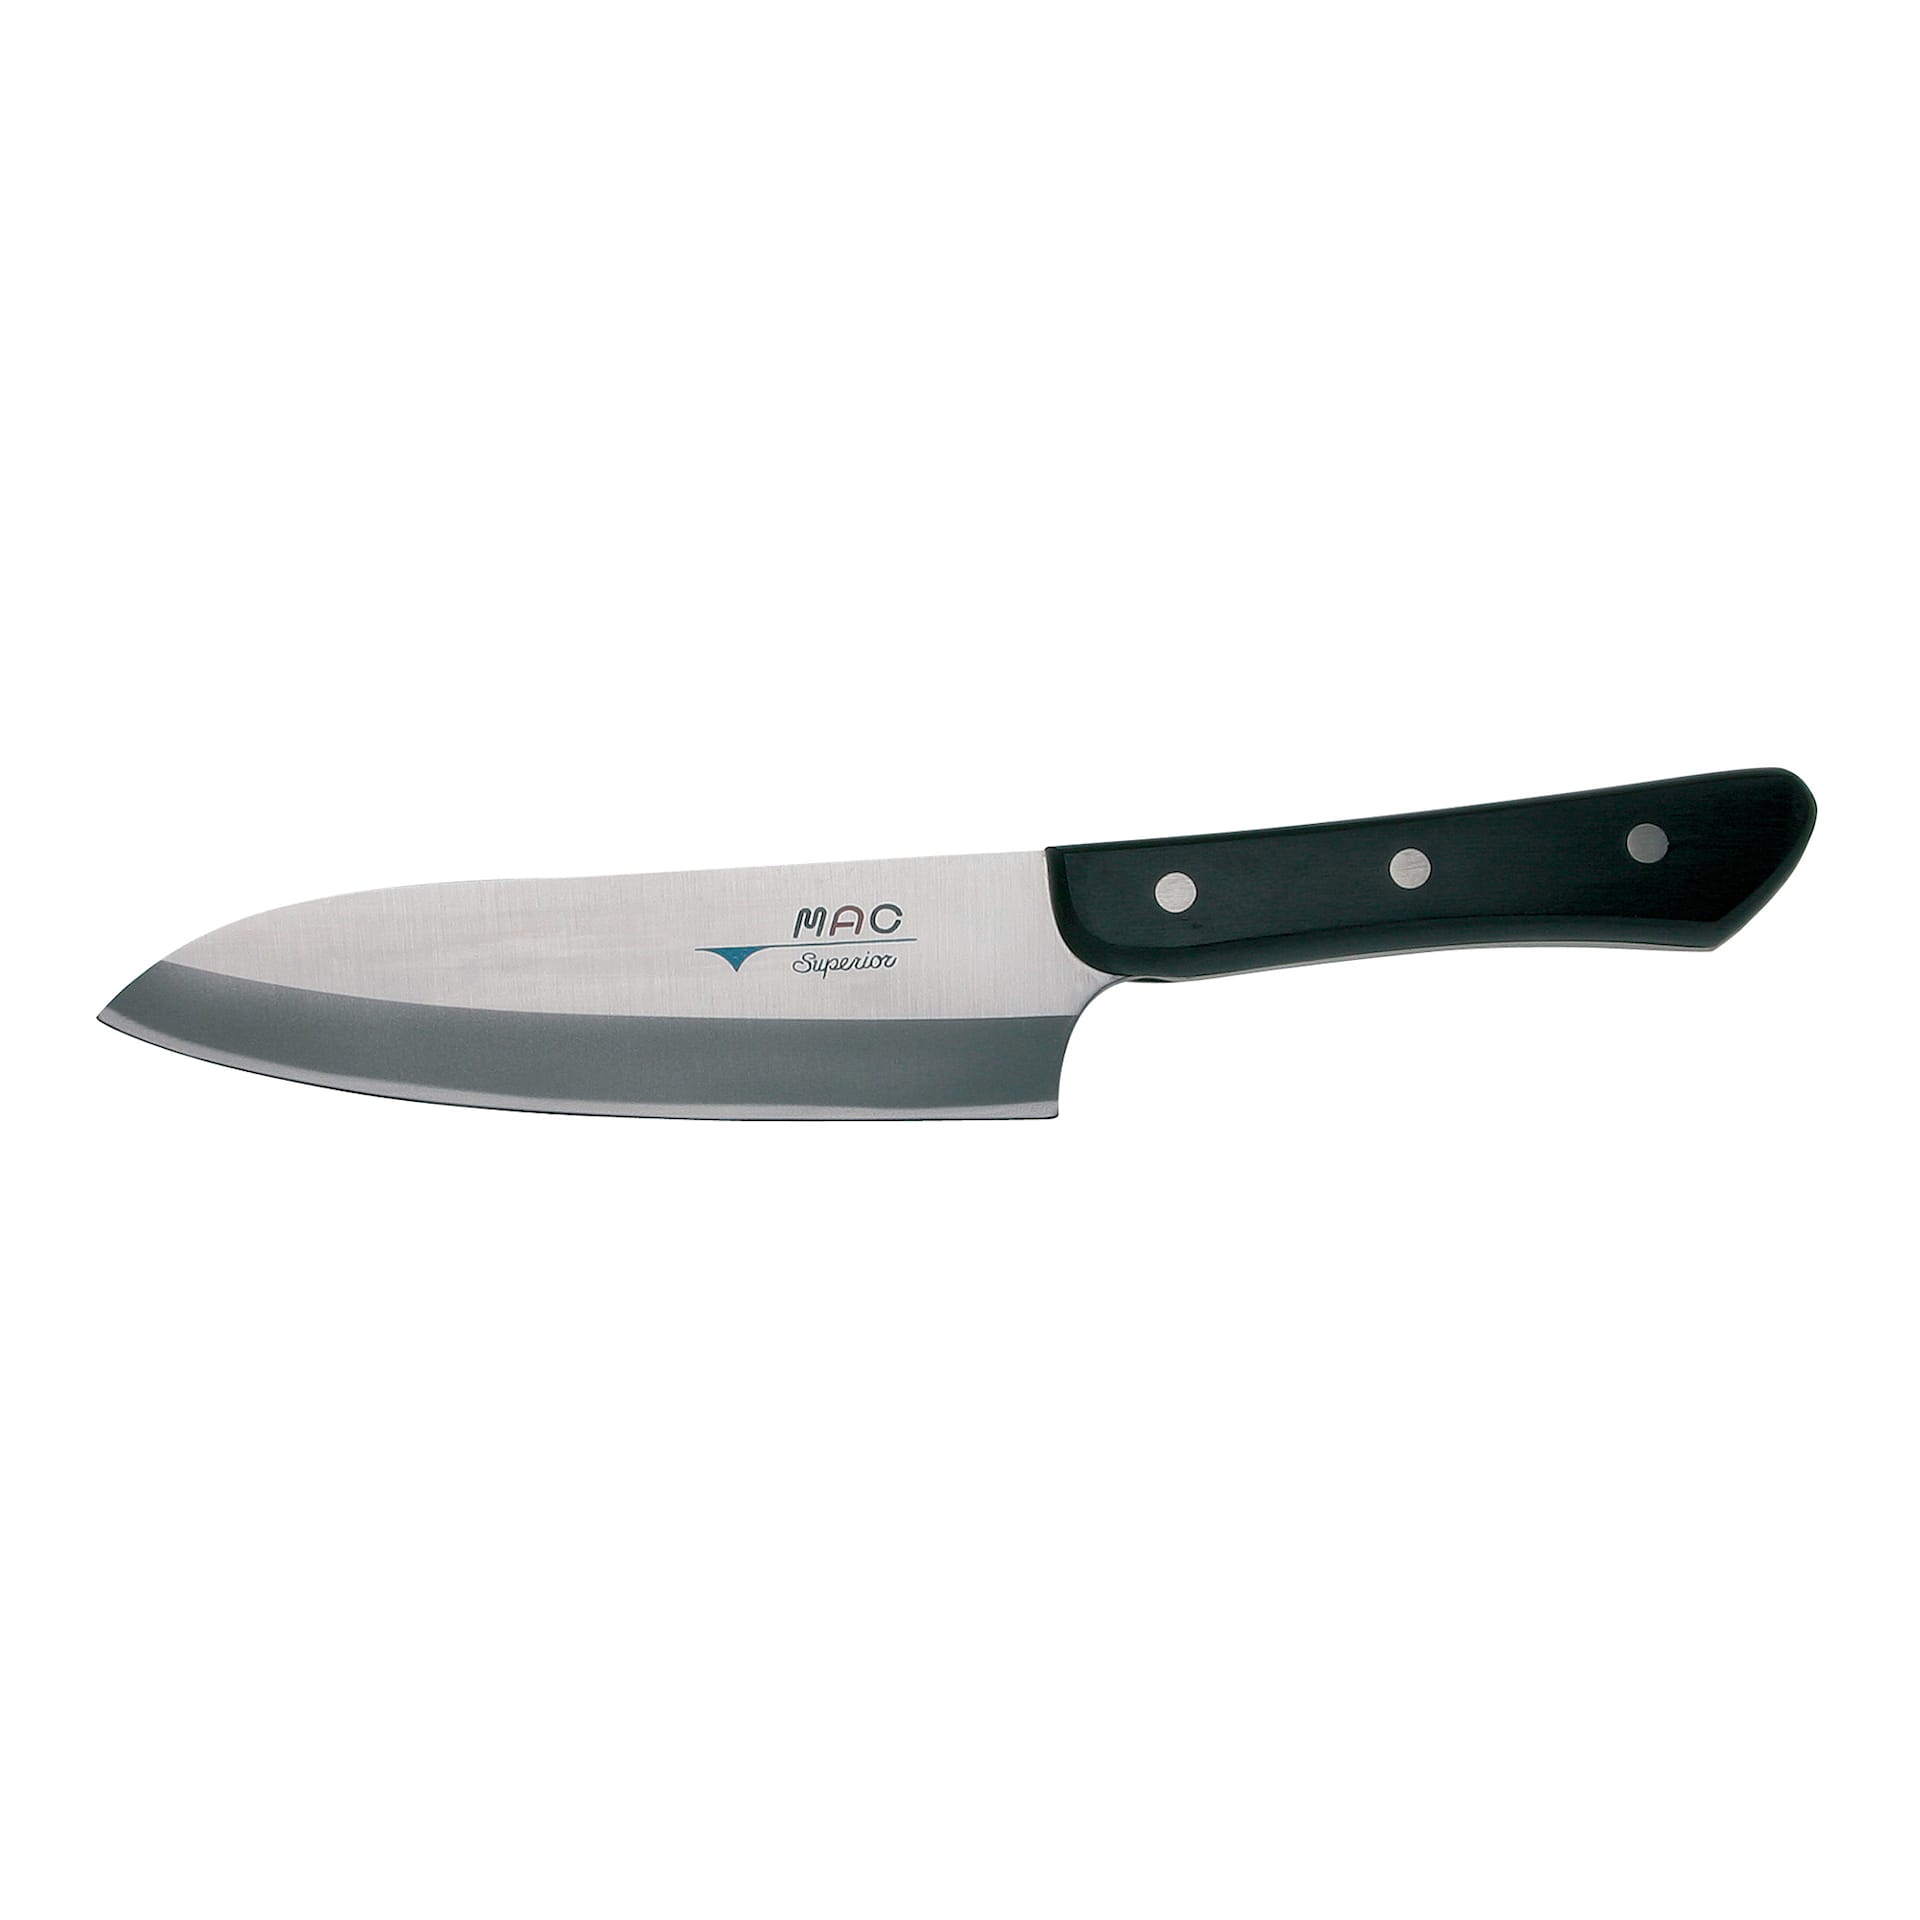 Superior - Santoku Chef's knife, 17 cm - MAC - NO GA